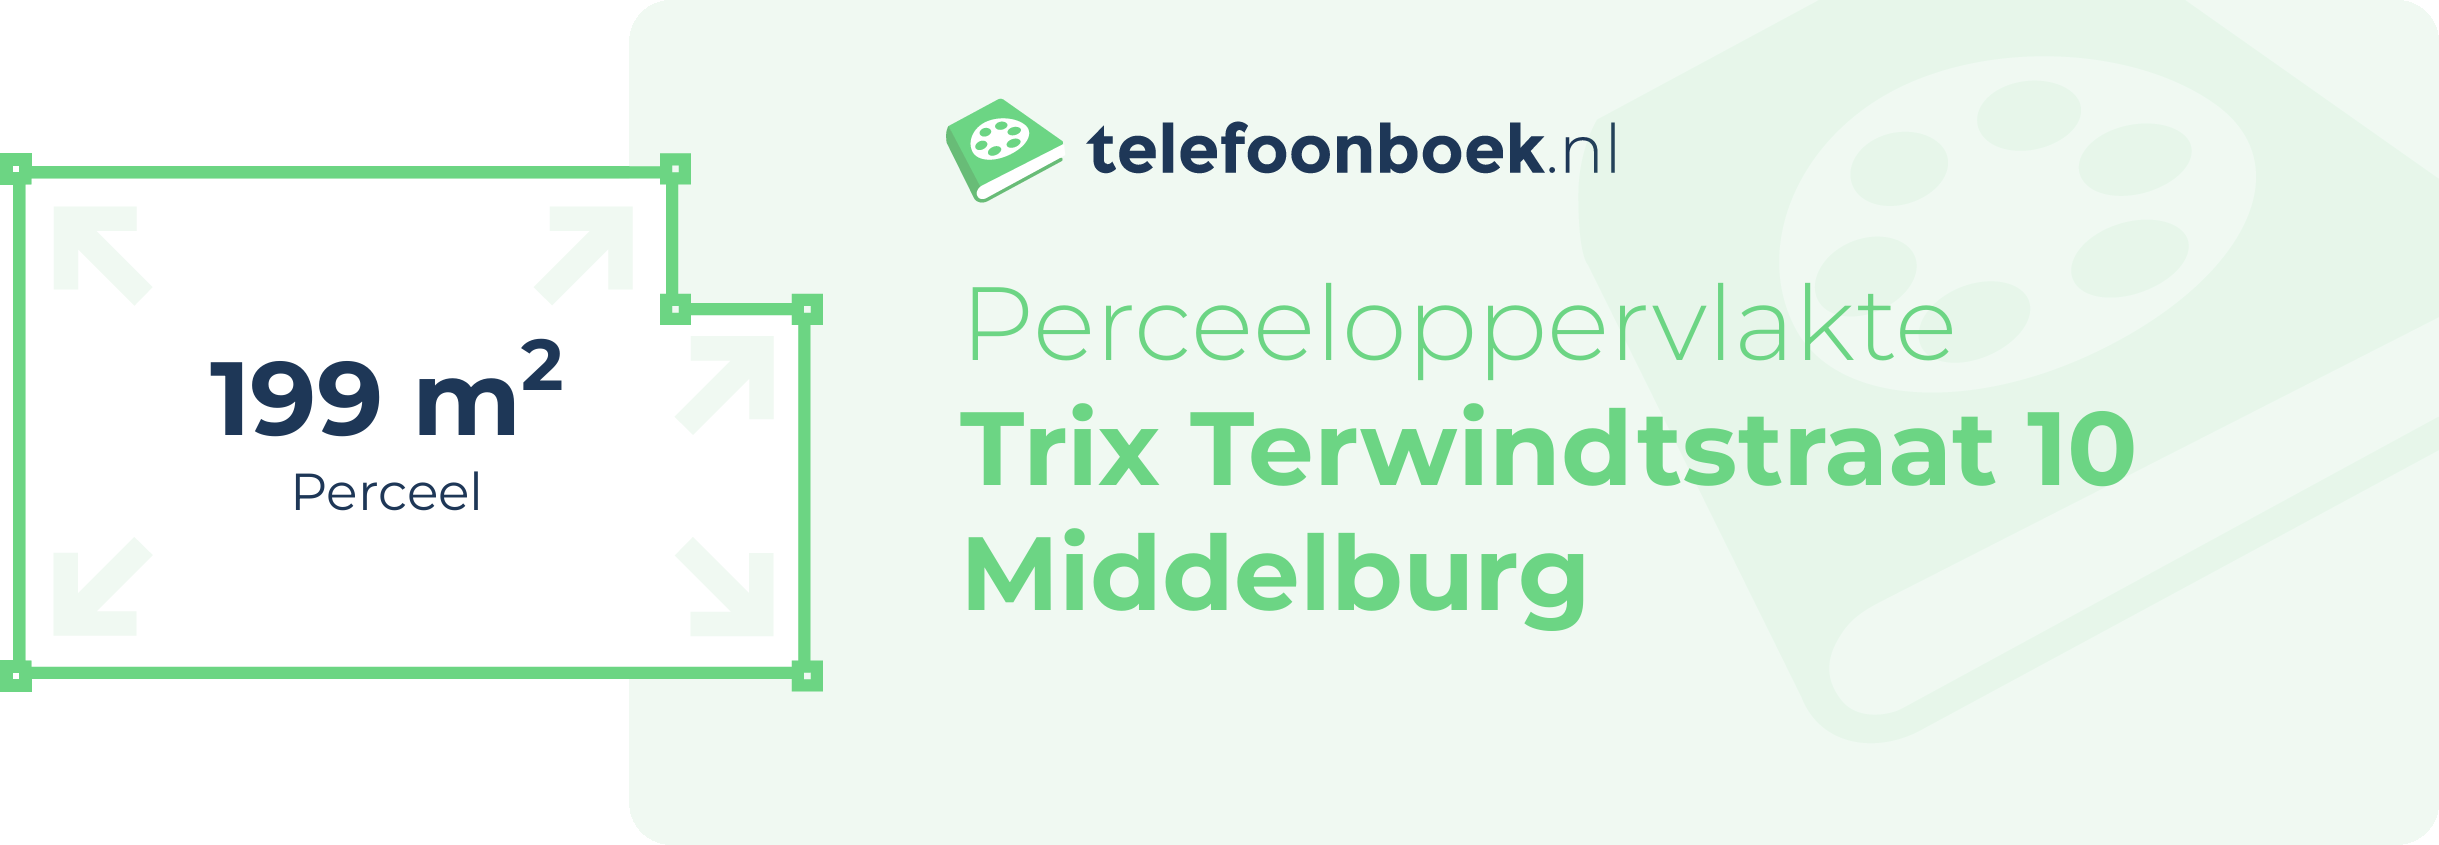 Perceeloppervlakte Trix Terwindtstraat 10 Middelburg